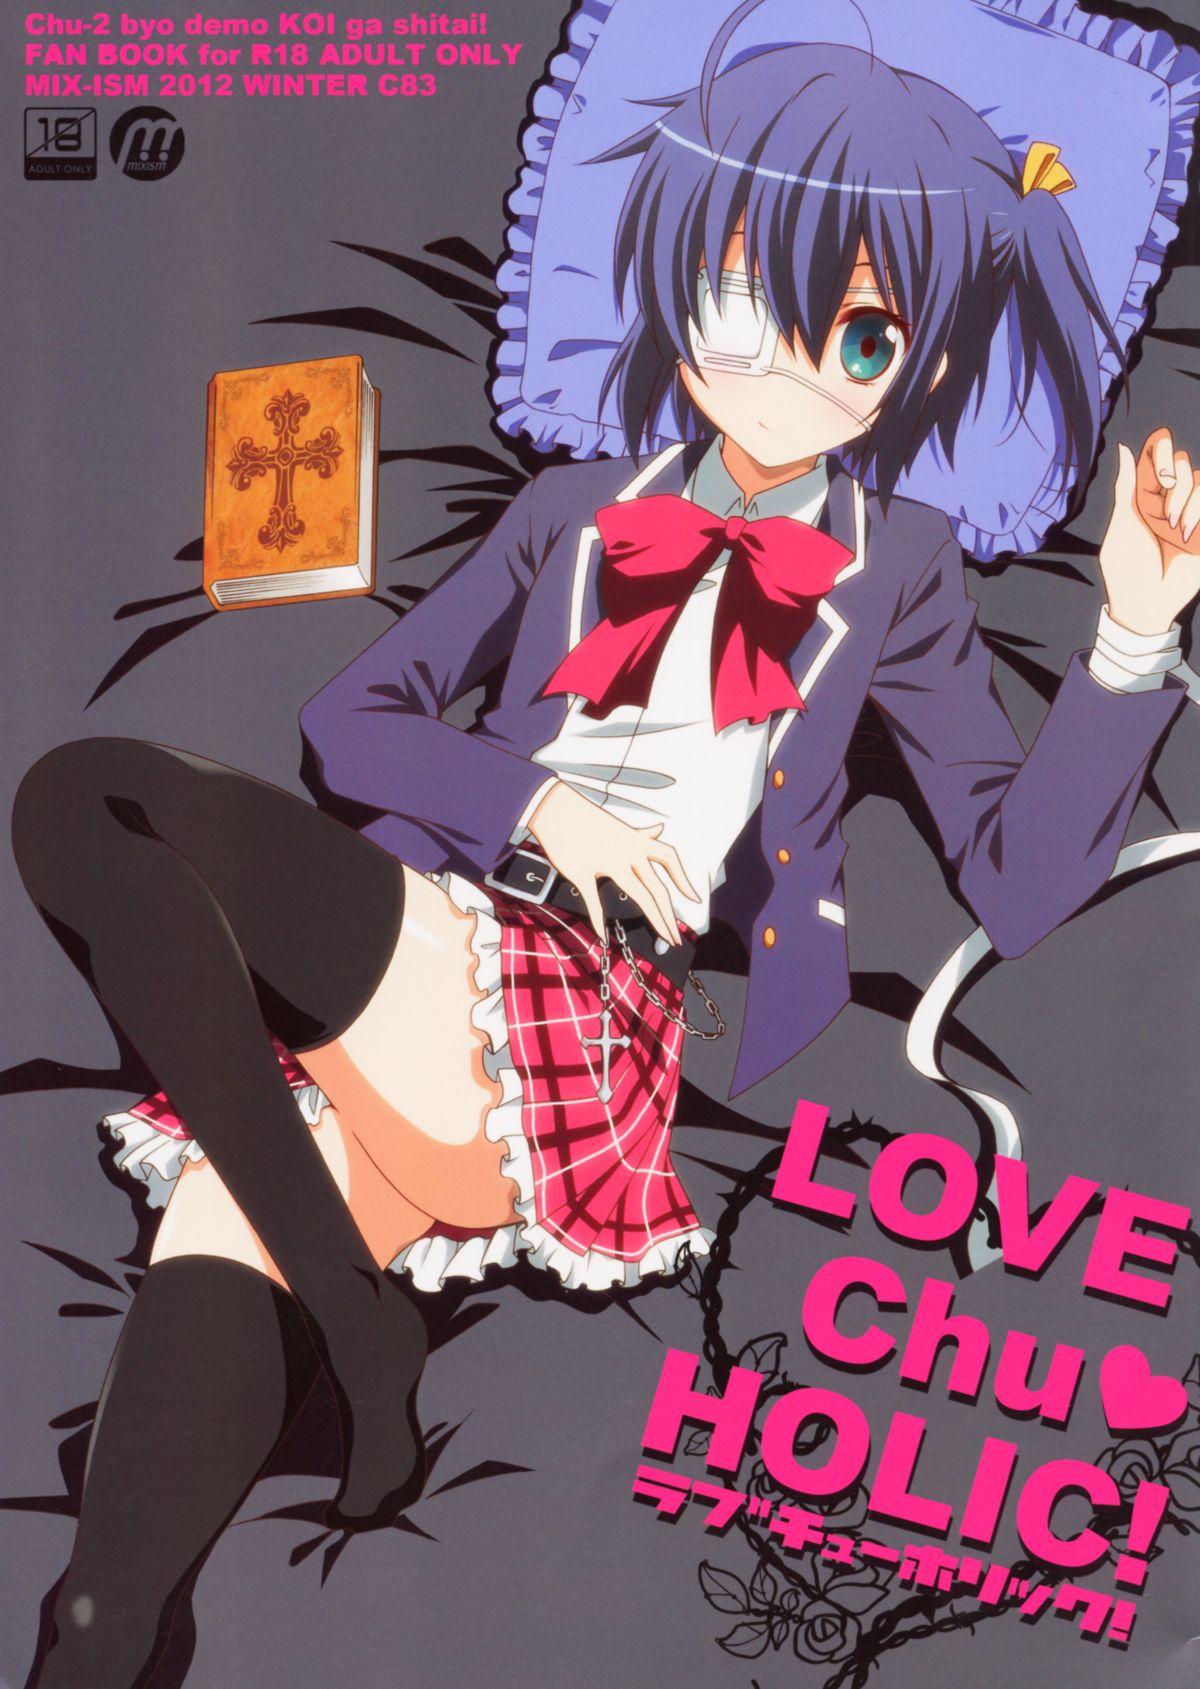 Booty LOVE Chu♥ HOLIC! - Chuunibyou demo koi ga shitai Clip - Picture 1